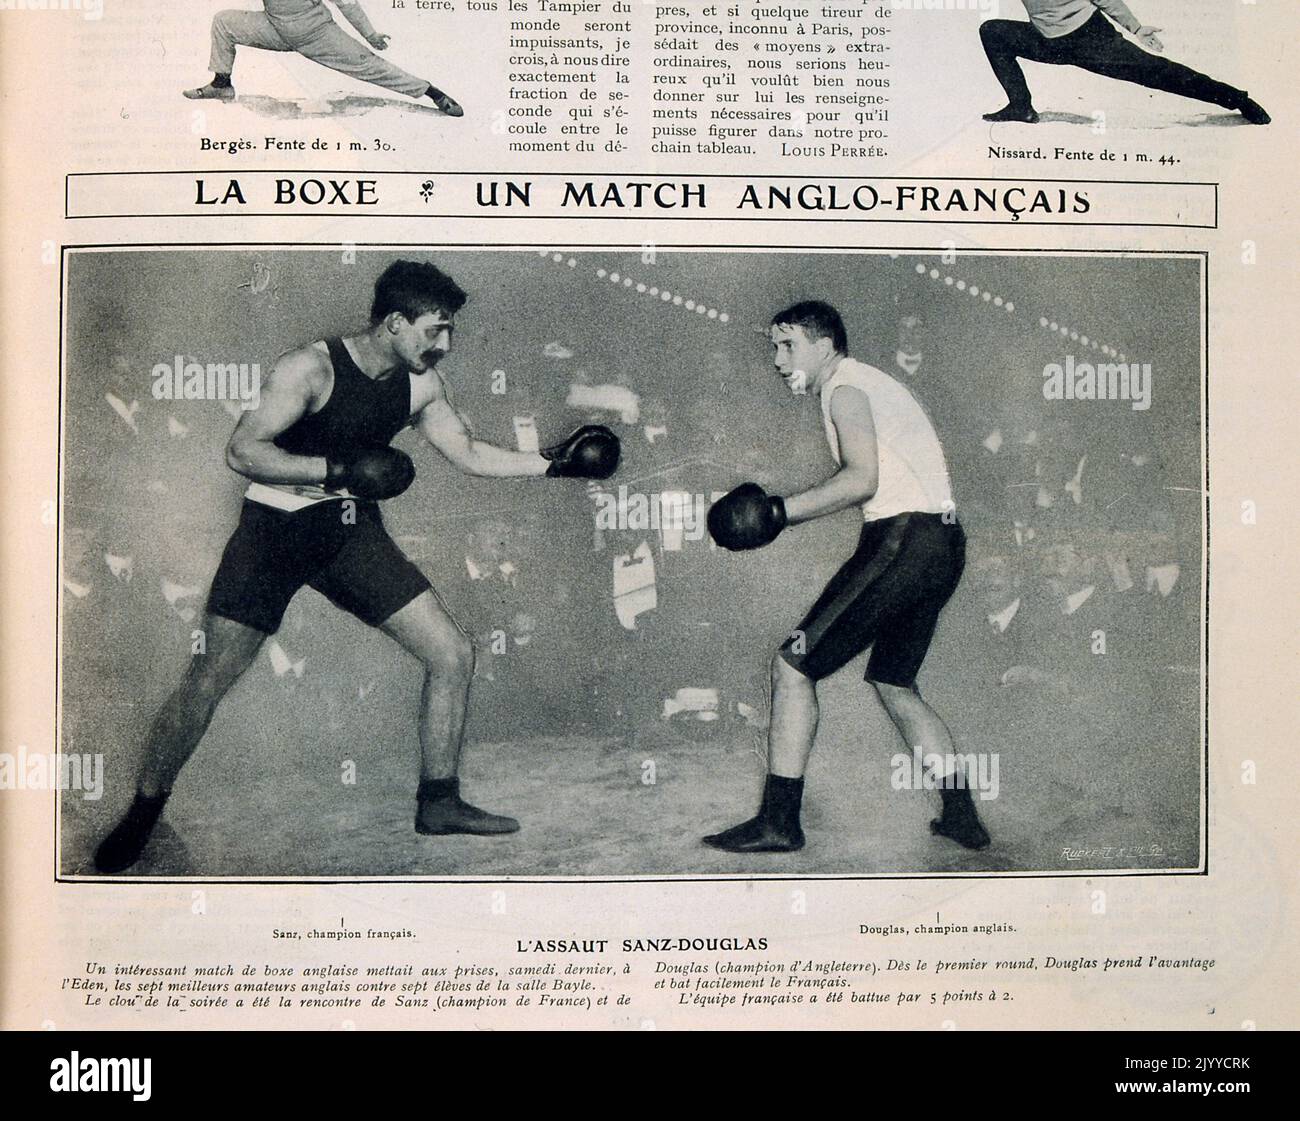 Foto im Inneren des Lifestyle-Magazins La Vie au Grand Air; Boxkampf zwischen einem Engländer und einem Franzosen bei einer anglo-französischen Boxmeisterschaften, bei der die Engländer um fünf Punkte gewinnen. Stockfoto